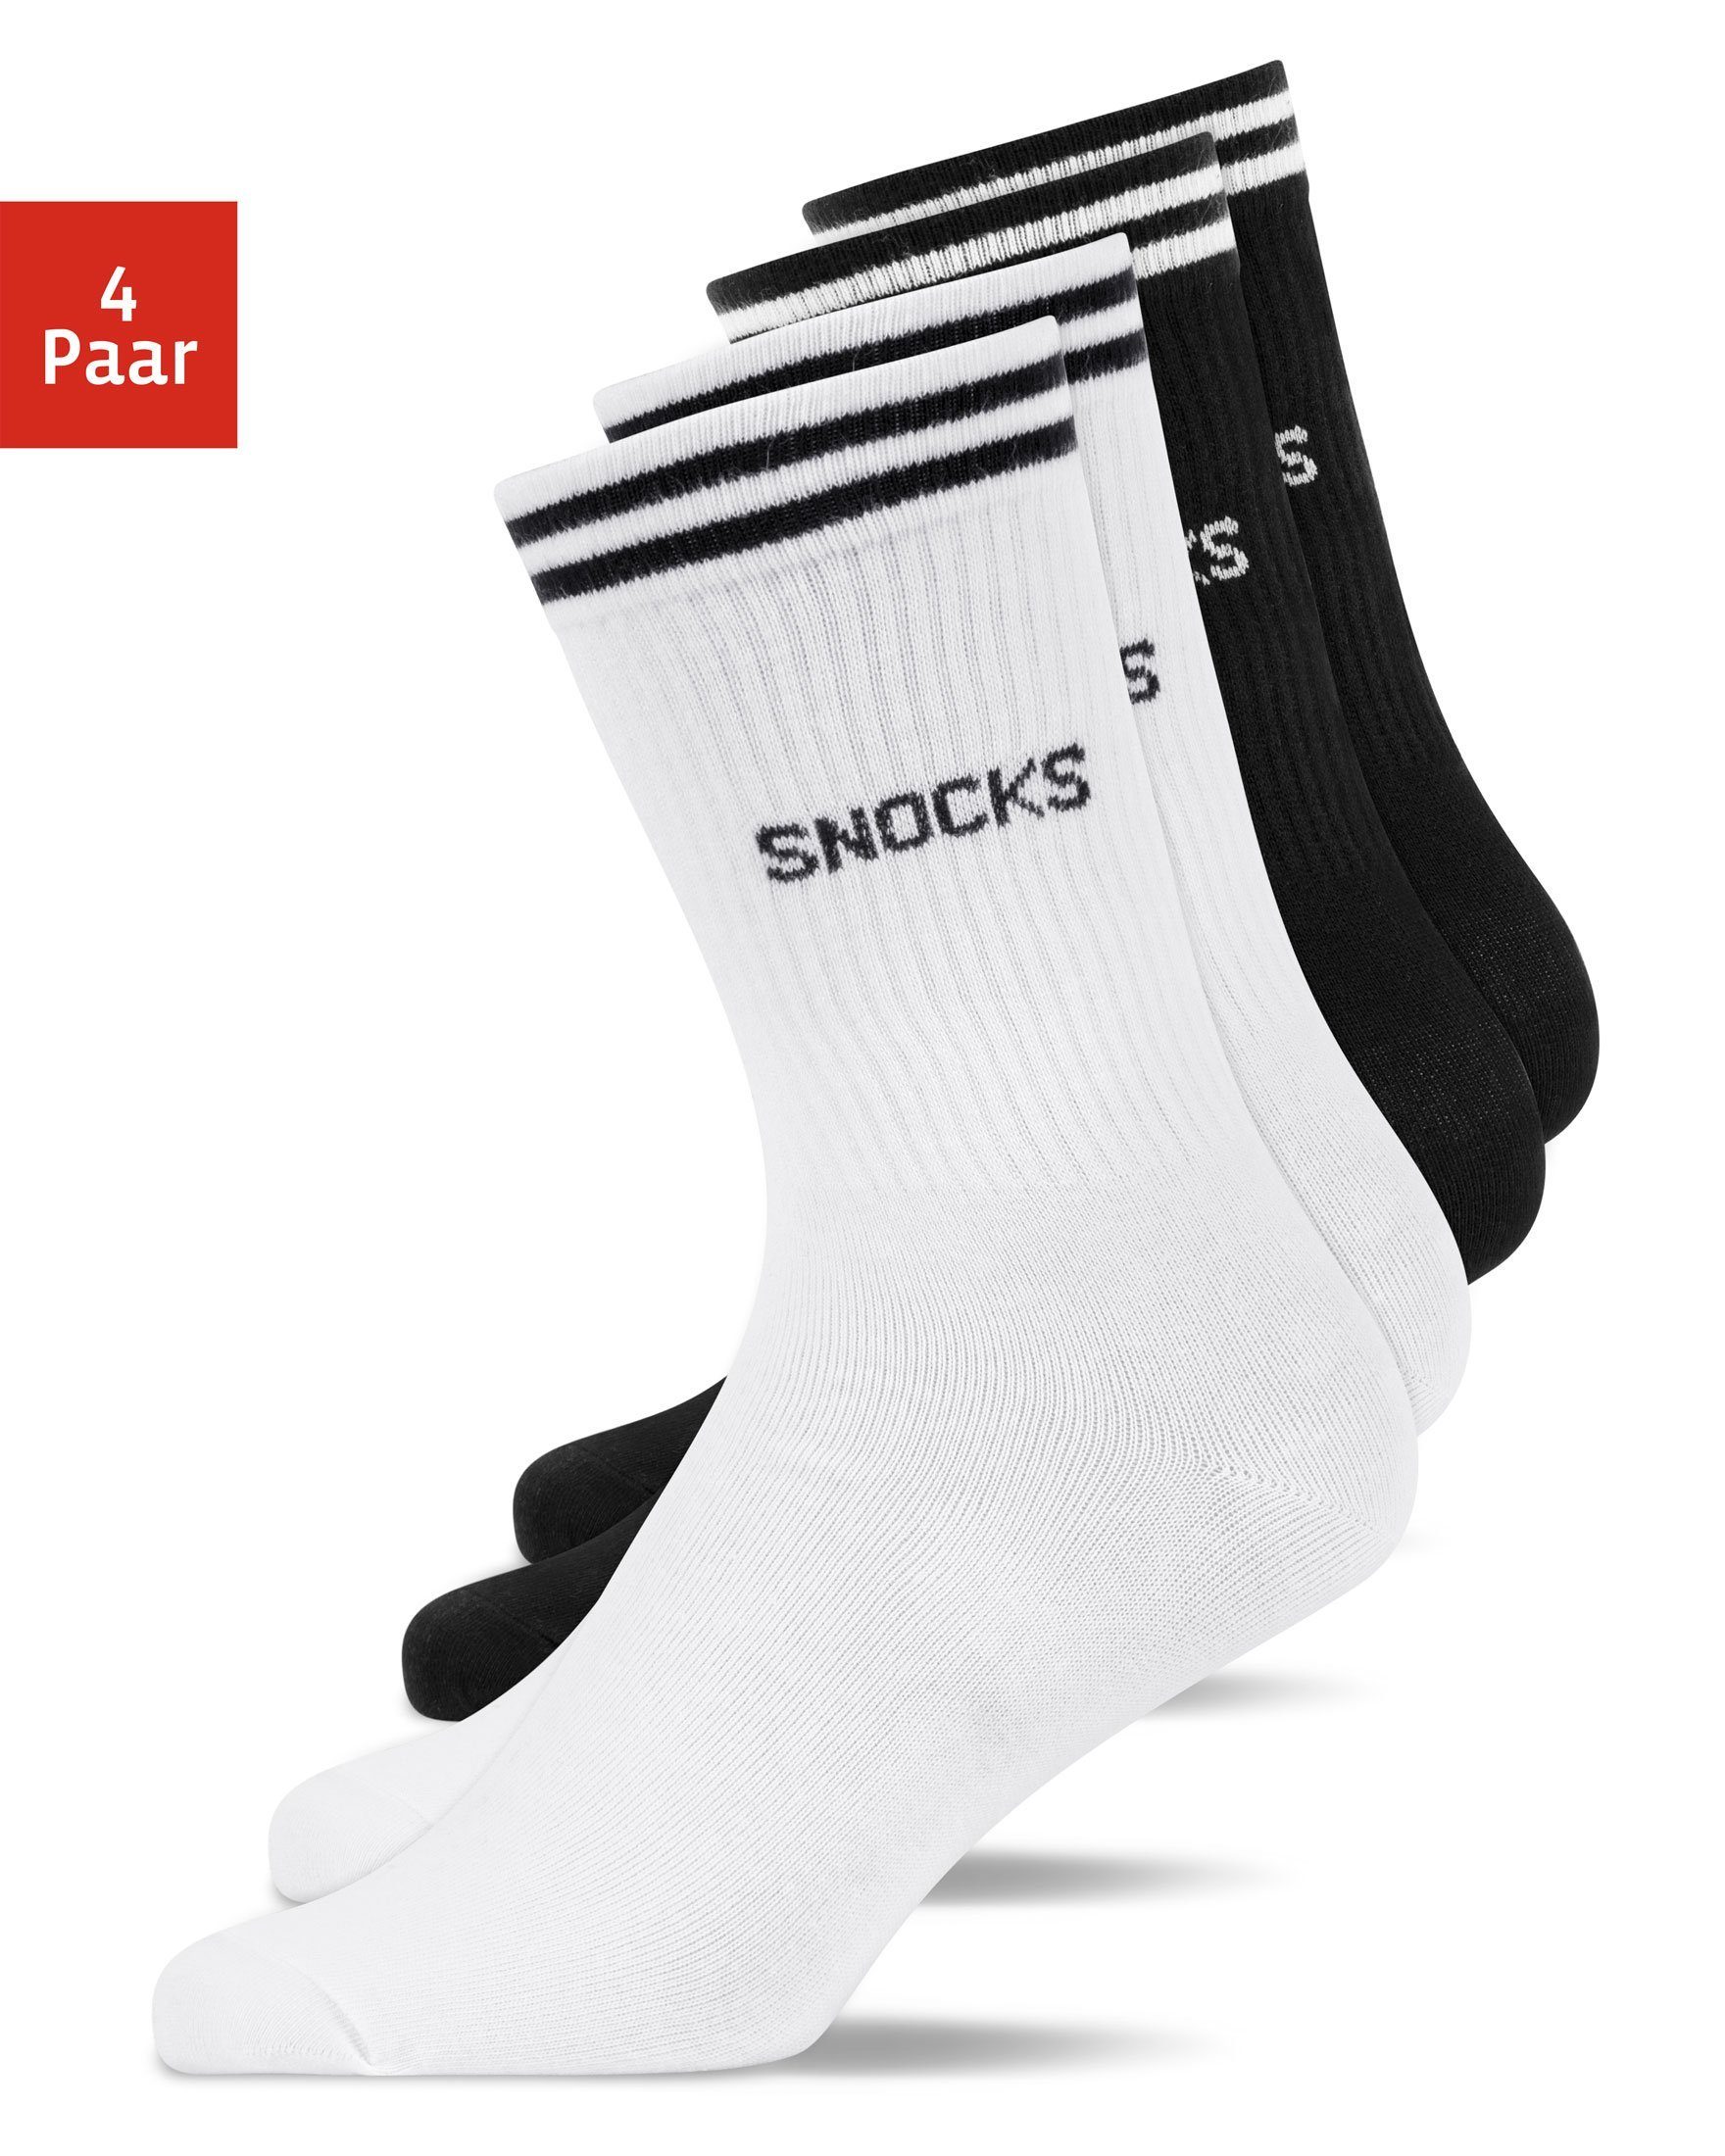 SNOCKS Sportsocken Hohe Tennissocken mit Streifen für Damen & Herren (4-Paar) aus Bio-Baumwolle, stylish für jedes Outfit Schwarz-Weiß